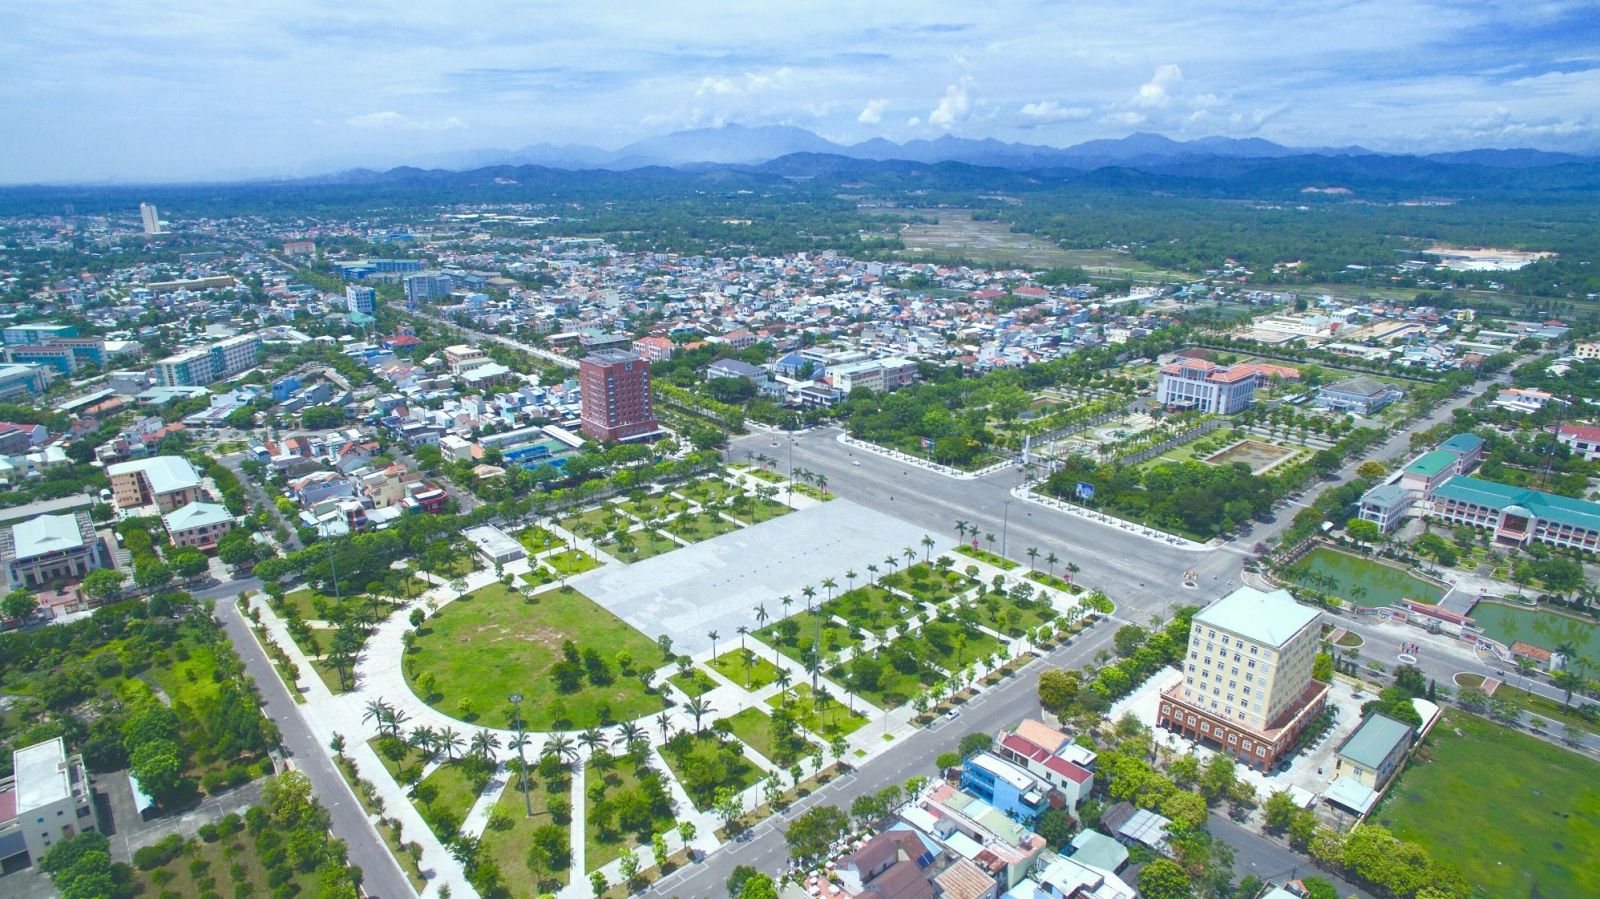 Tỉnh Quảng Nam phấn đấu trở thành thành phố trực thuộc Trung ương vào năm 2050